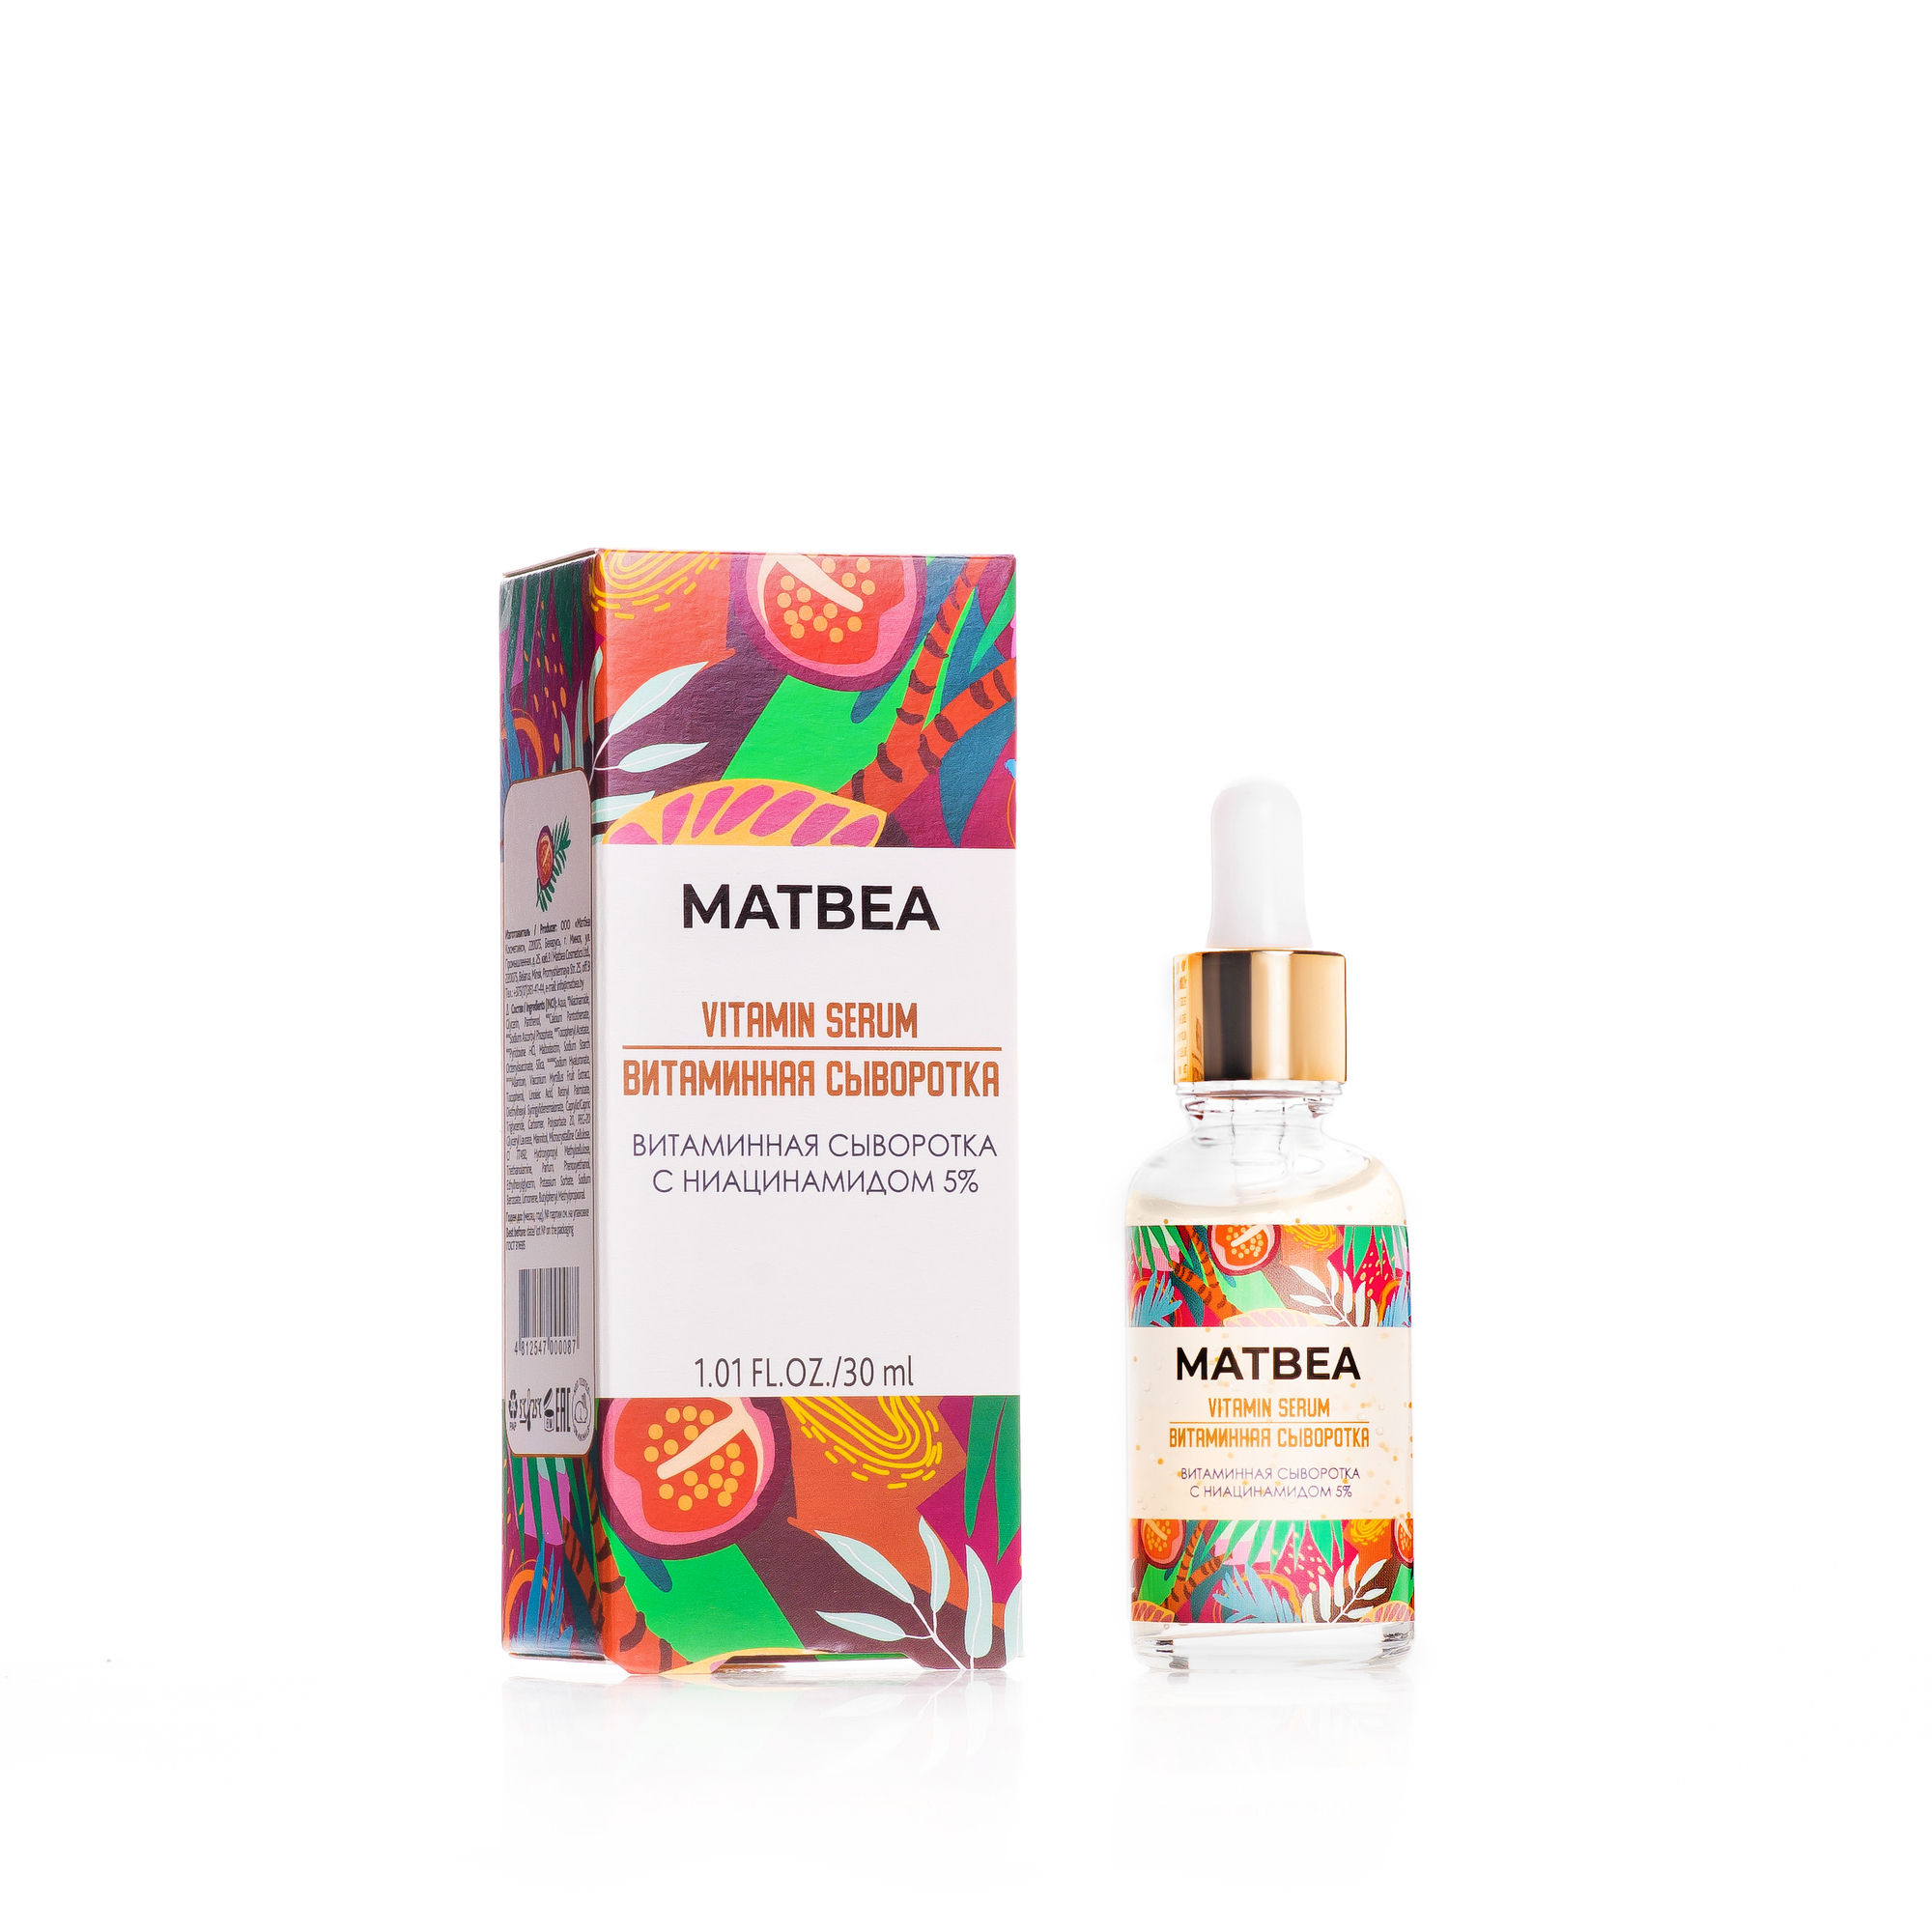 Matbea Face Витаминная сыворотка для лица с ниацинамидом 5% 30 мл